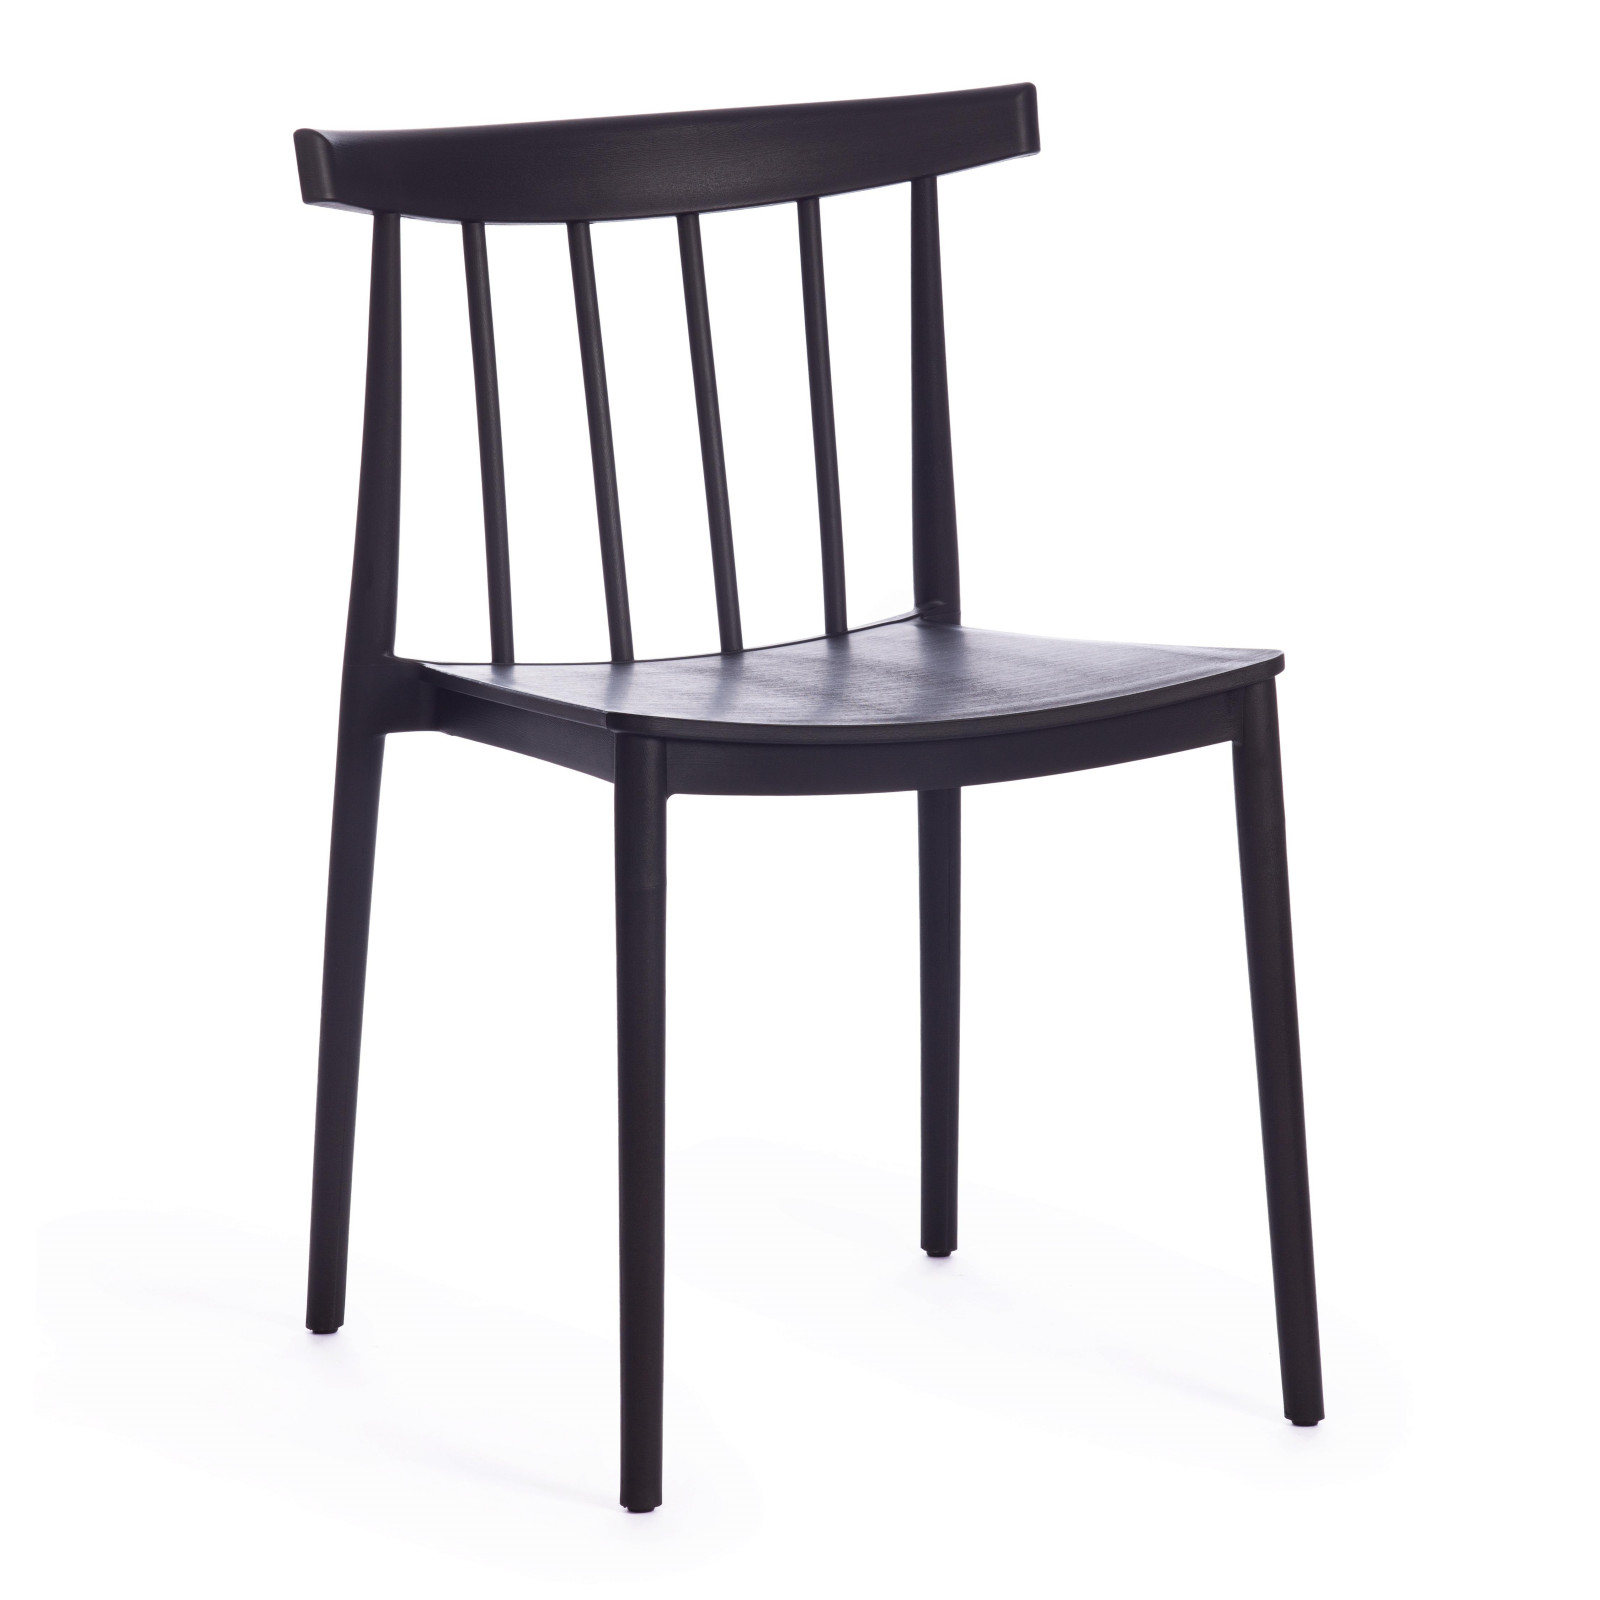 Легкий, компактный пластиковый стул в современном стиле модерн черного цвета